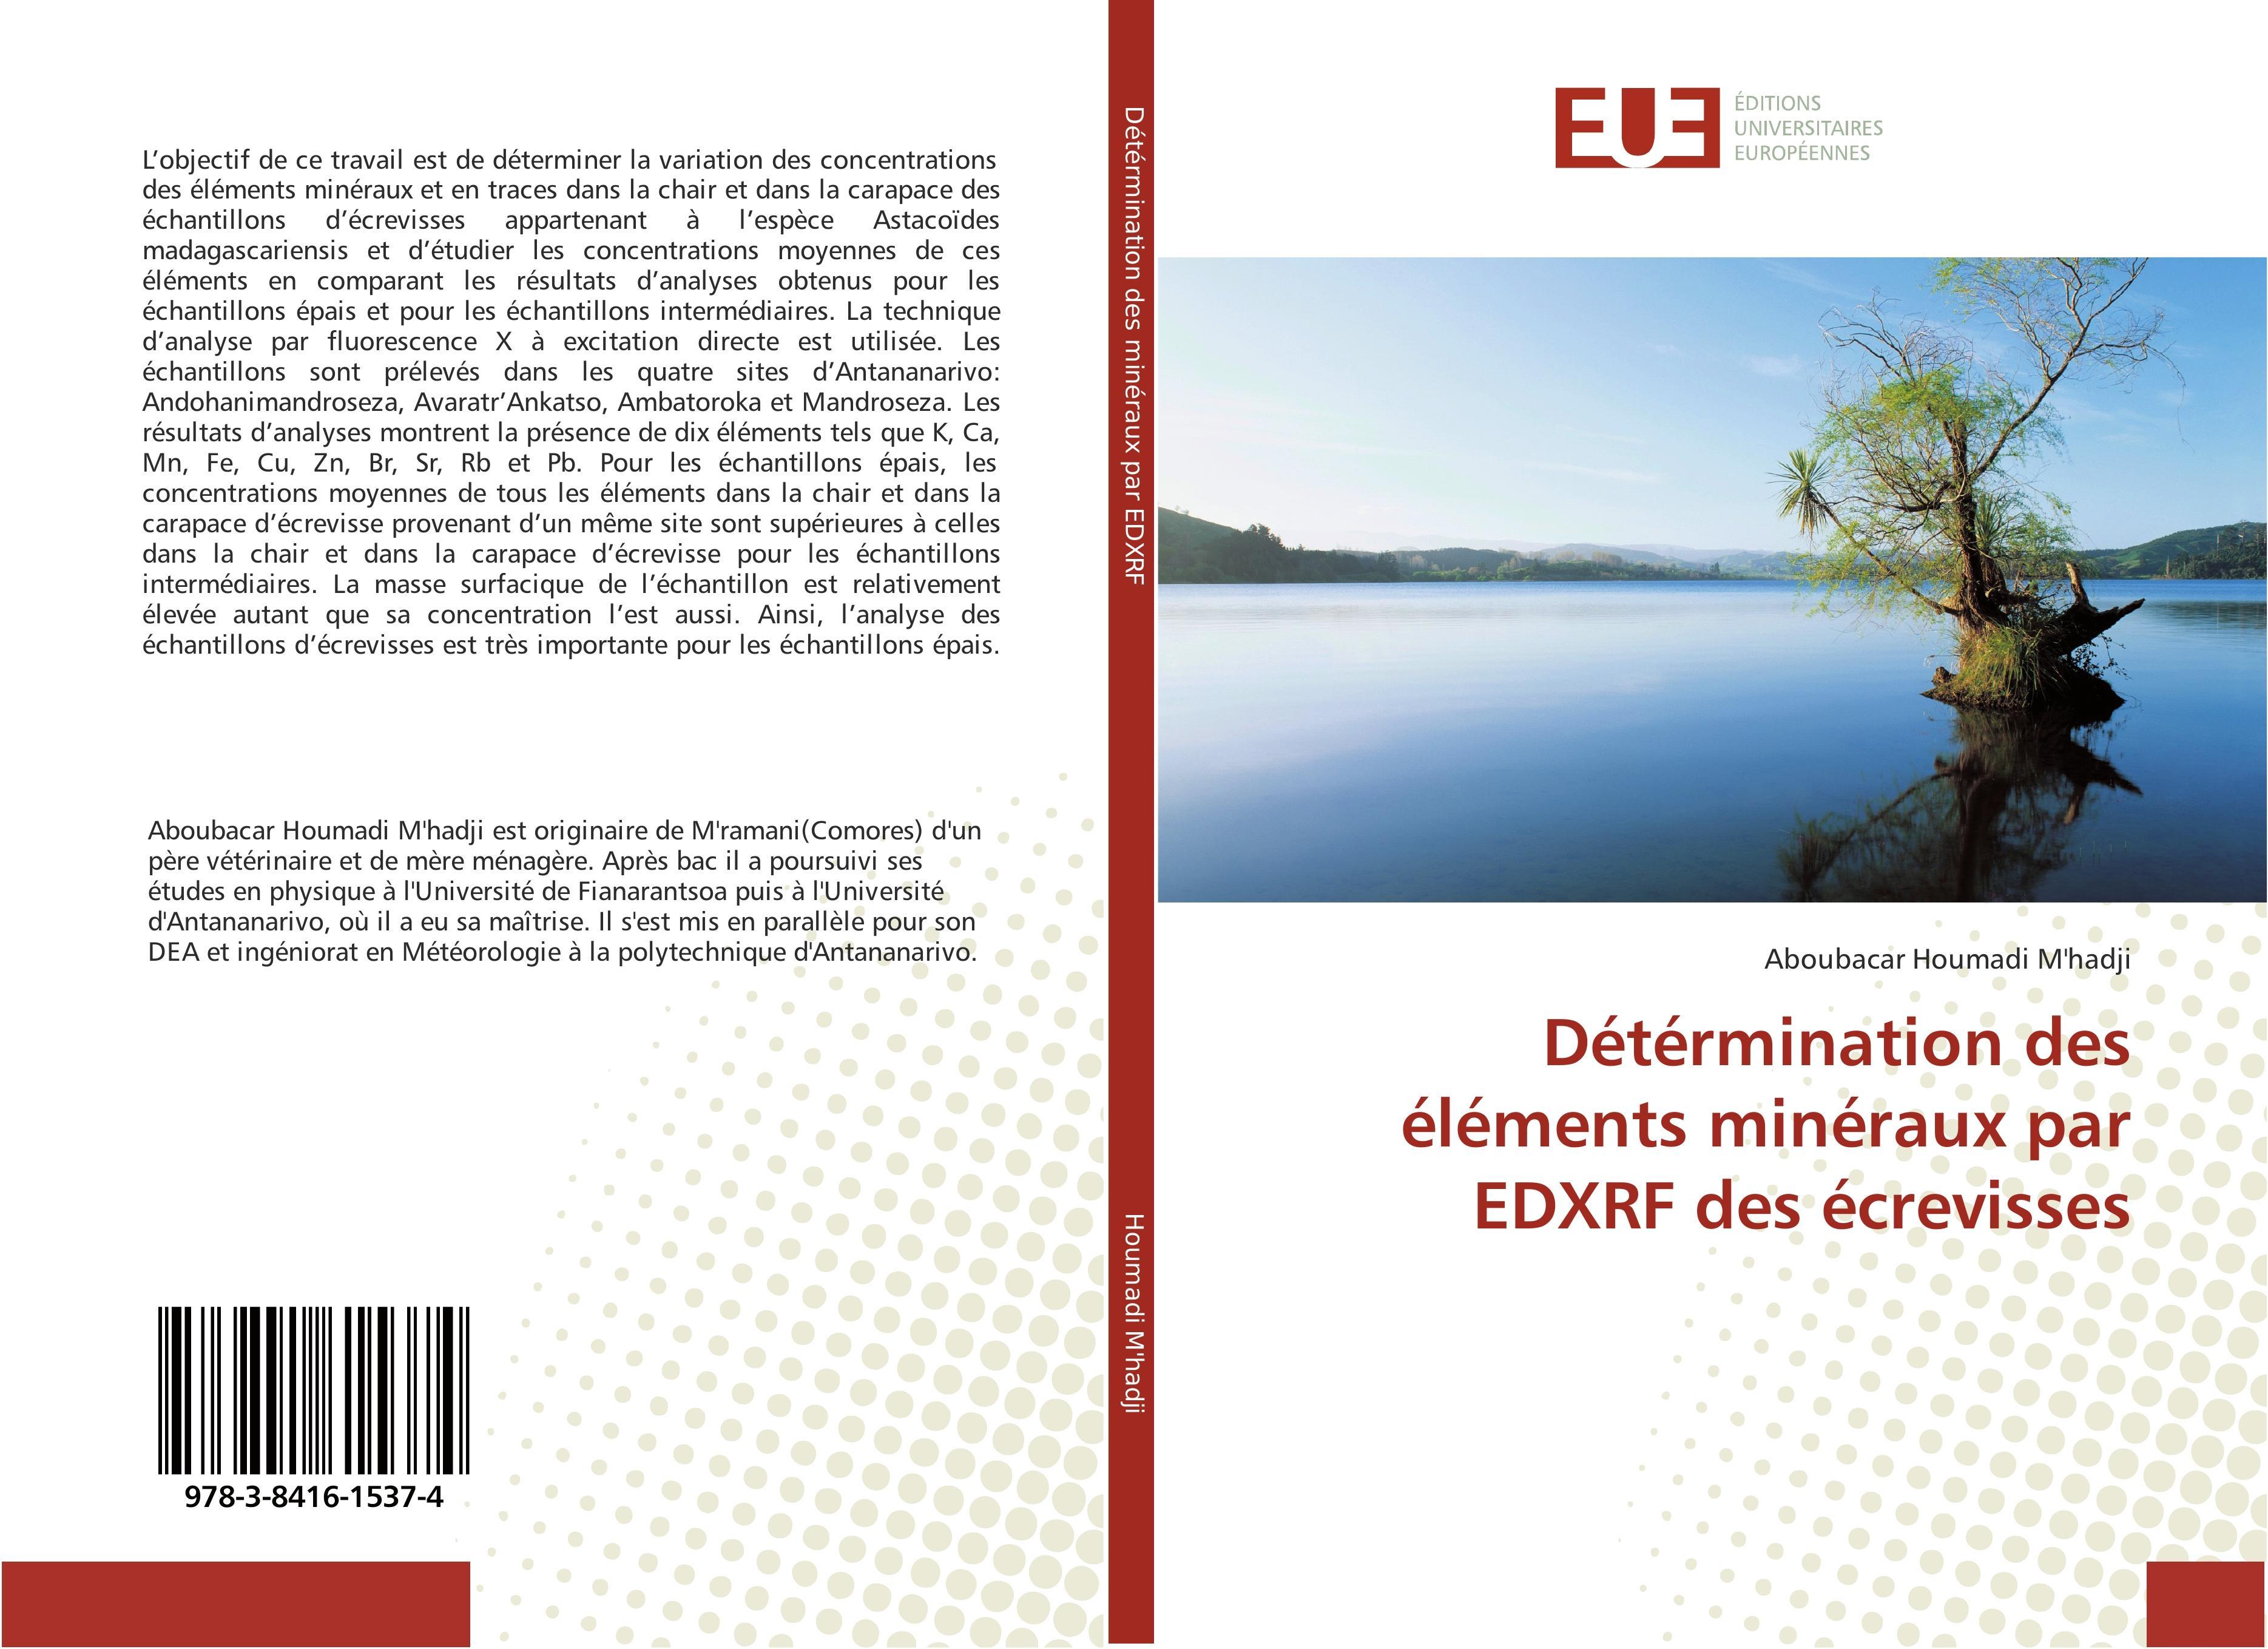 Détérmination des éléments minéraux par EDXRF des écrevisses Aboubacar Houm ... - 第 1/1 張圖片